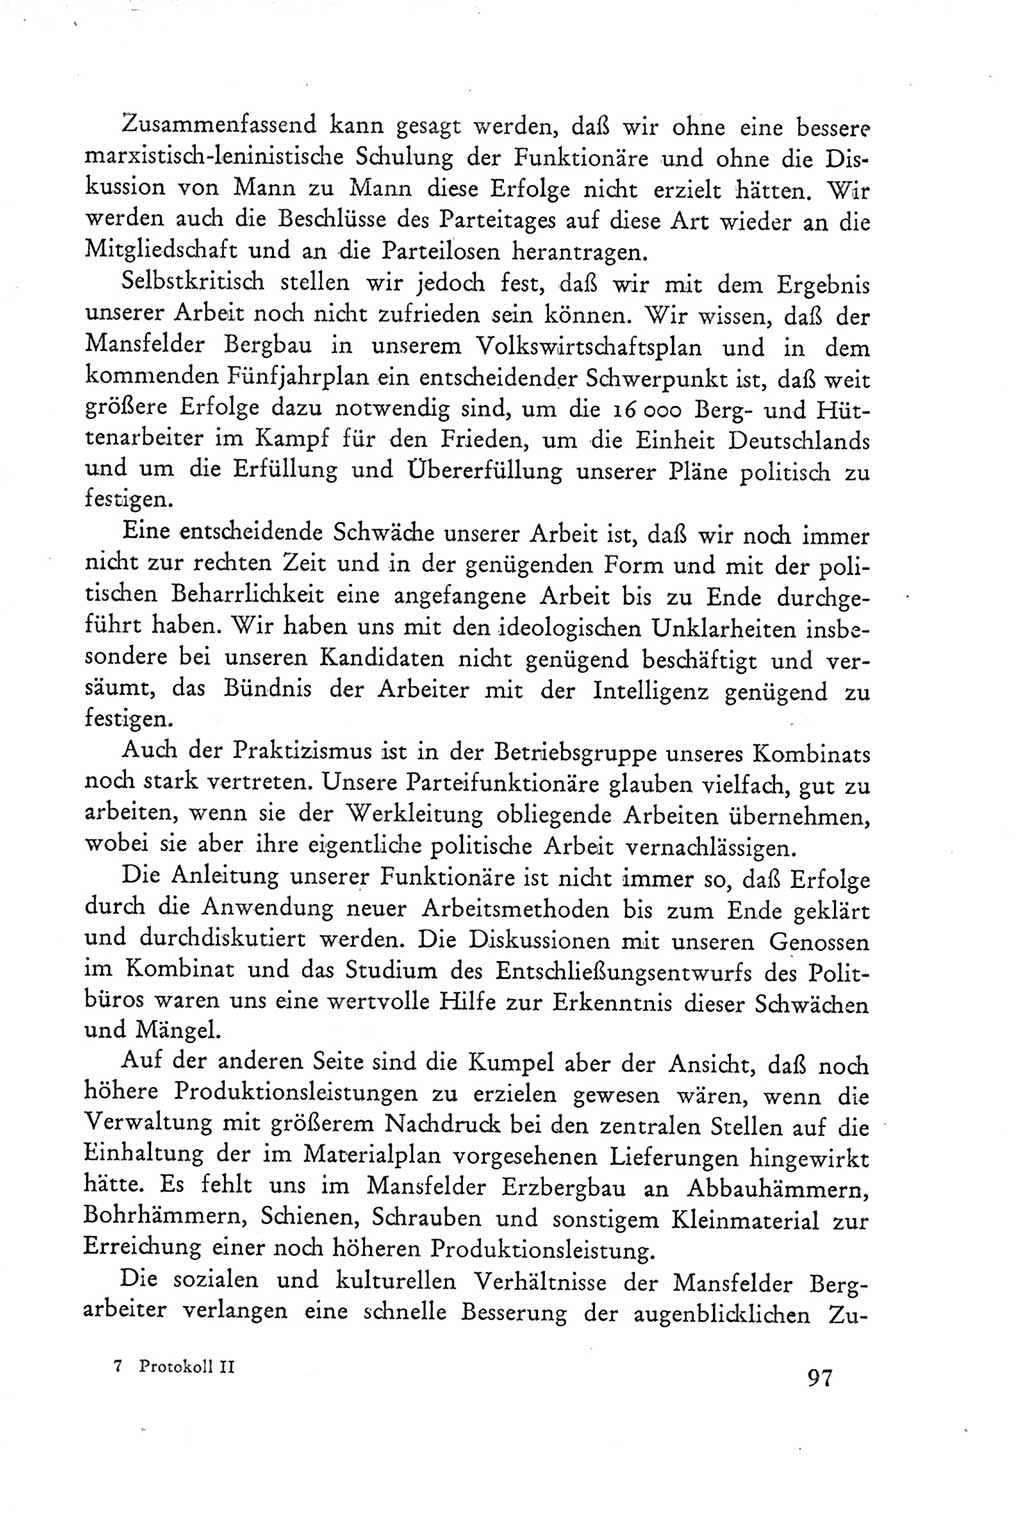 Protokoll der Verhandlungen des Ⅲ. Parteitages der Sozialistischen Einheitspartei Deutschlands (SED) [Deutsche Demokratische Republik (DDR)] 1950, Band 2, Seite 97 (Prot. Verh. Ⅲ. PT SED DDR 1950, Bd. 2, S. 97)